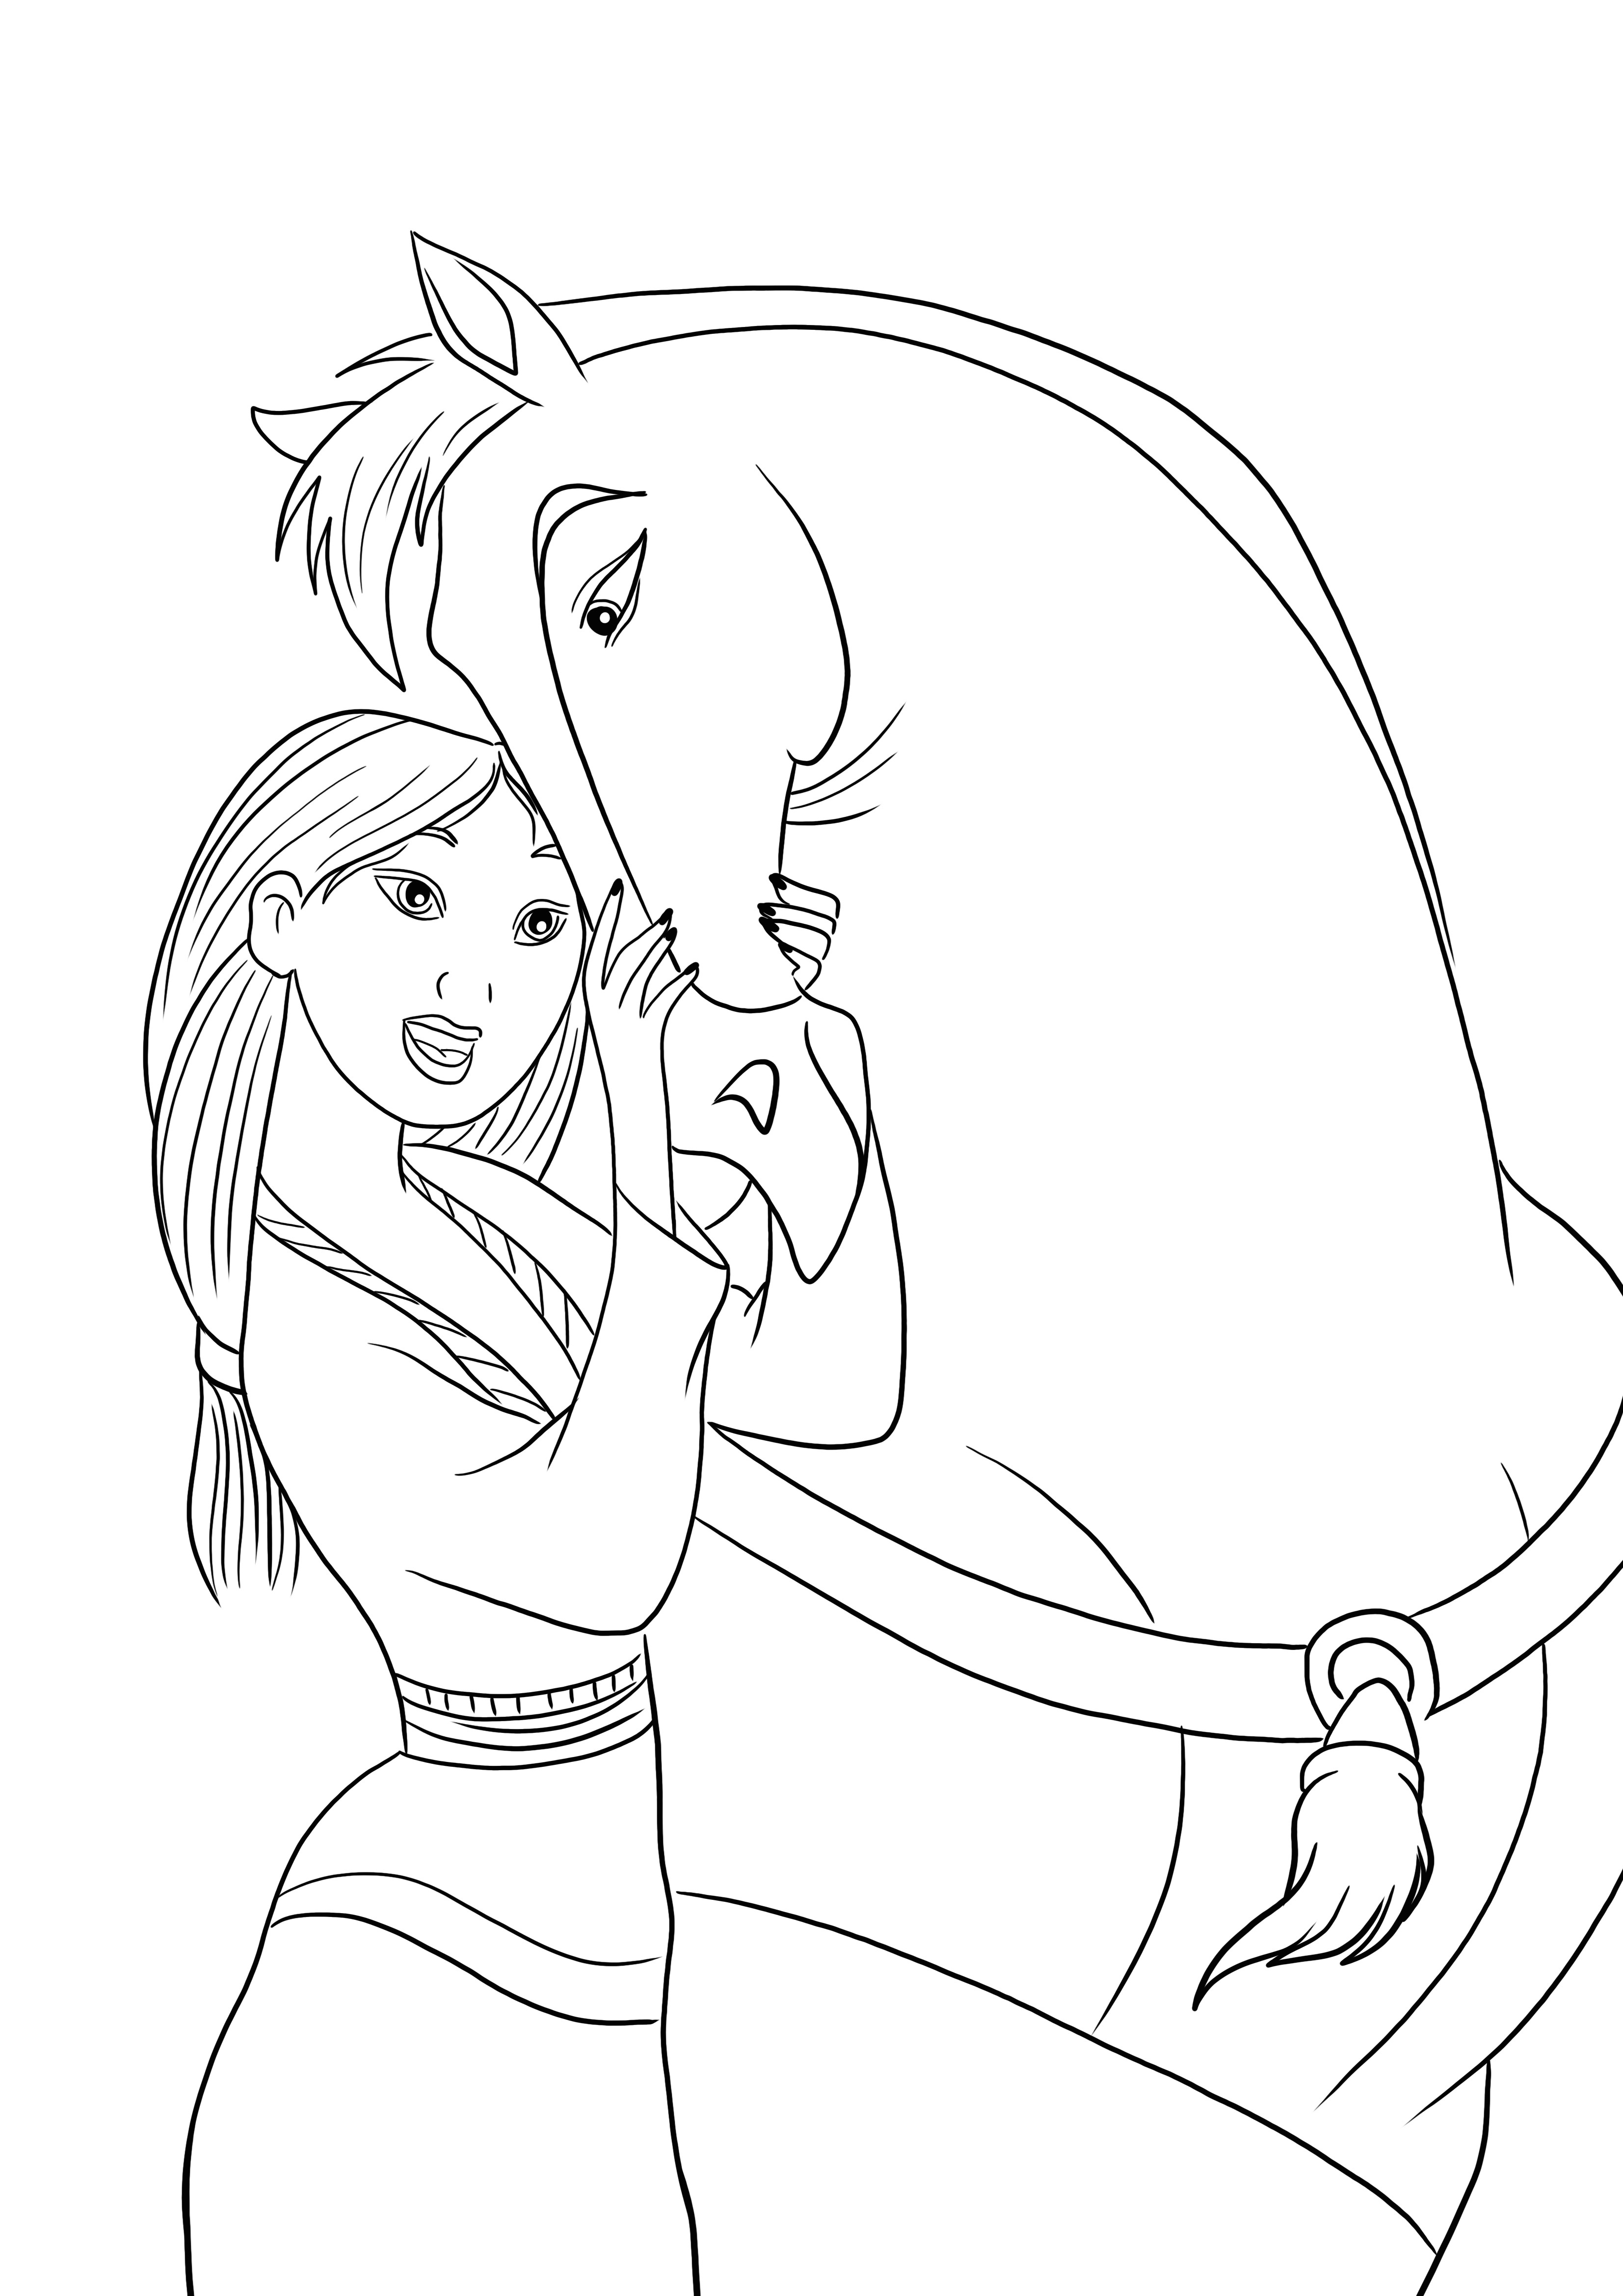 Mulan y el caballo de la familia Khan listos para imprimir y colorear gratis